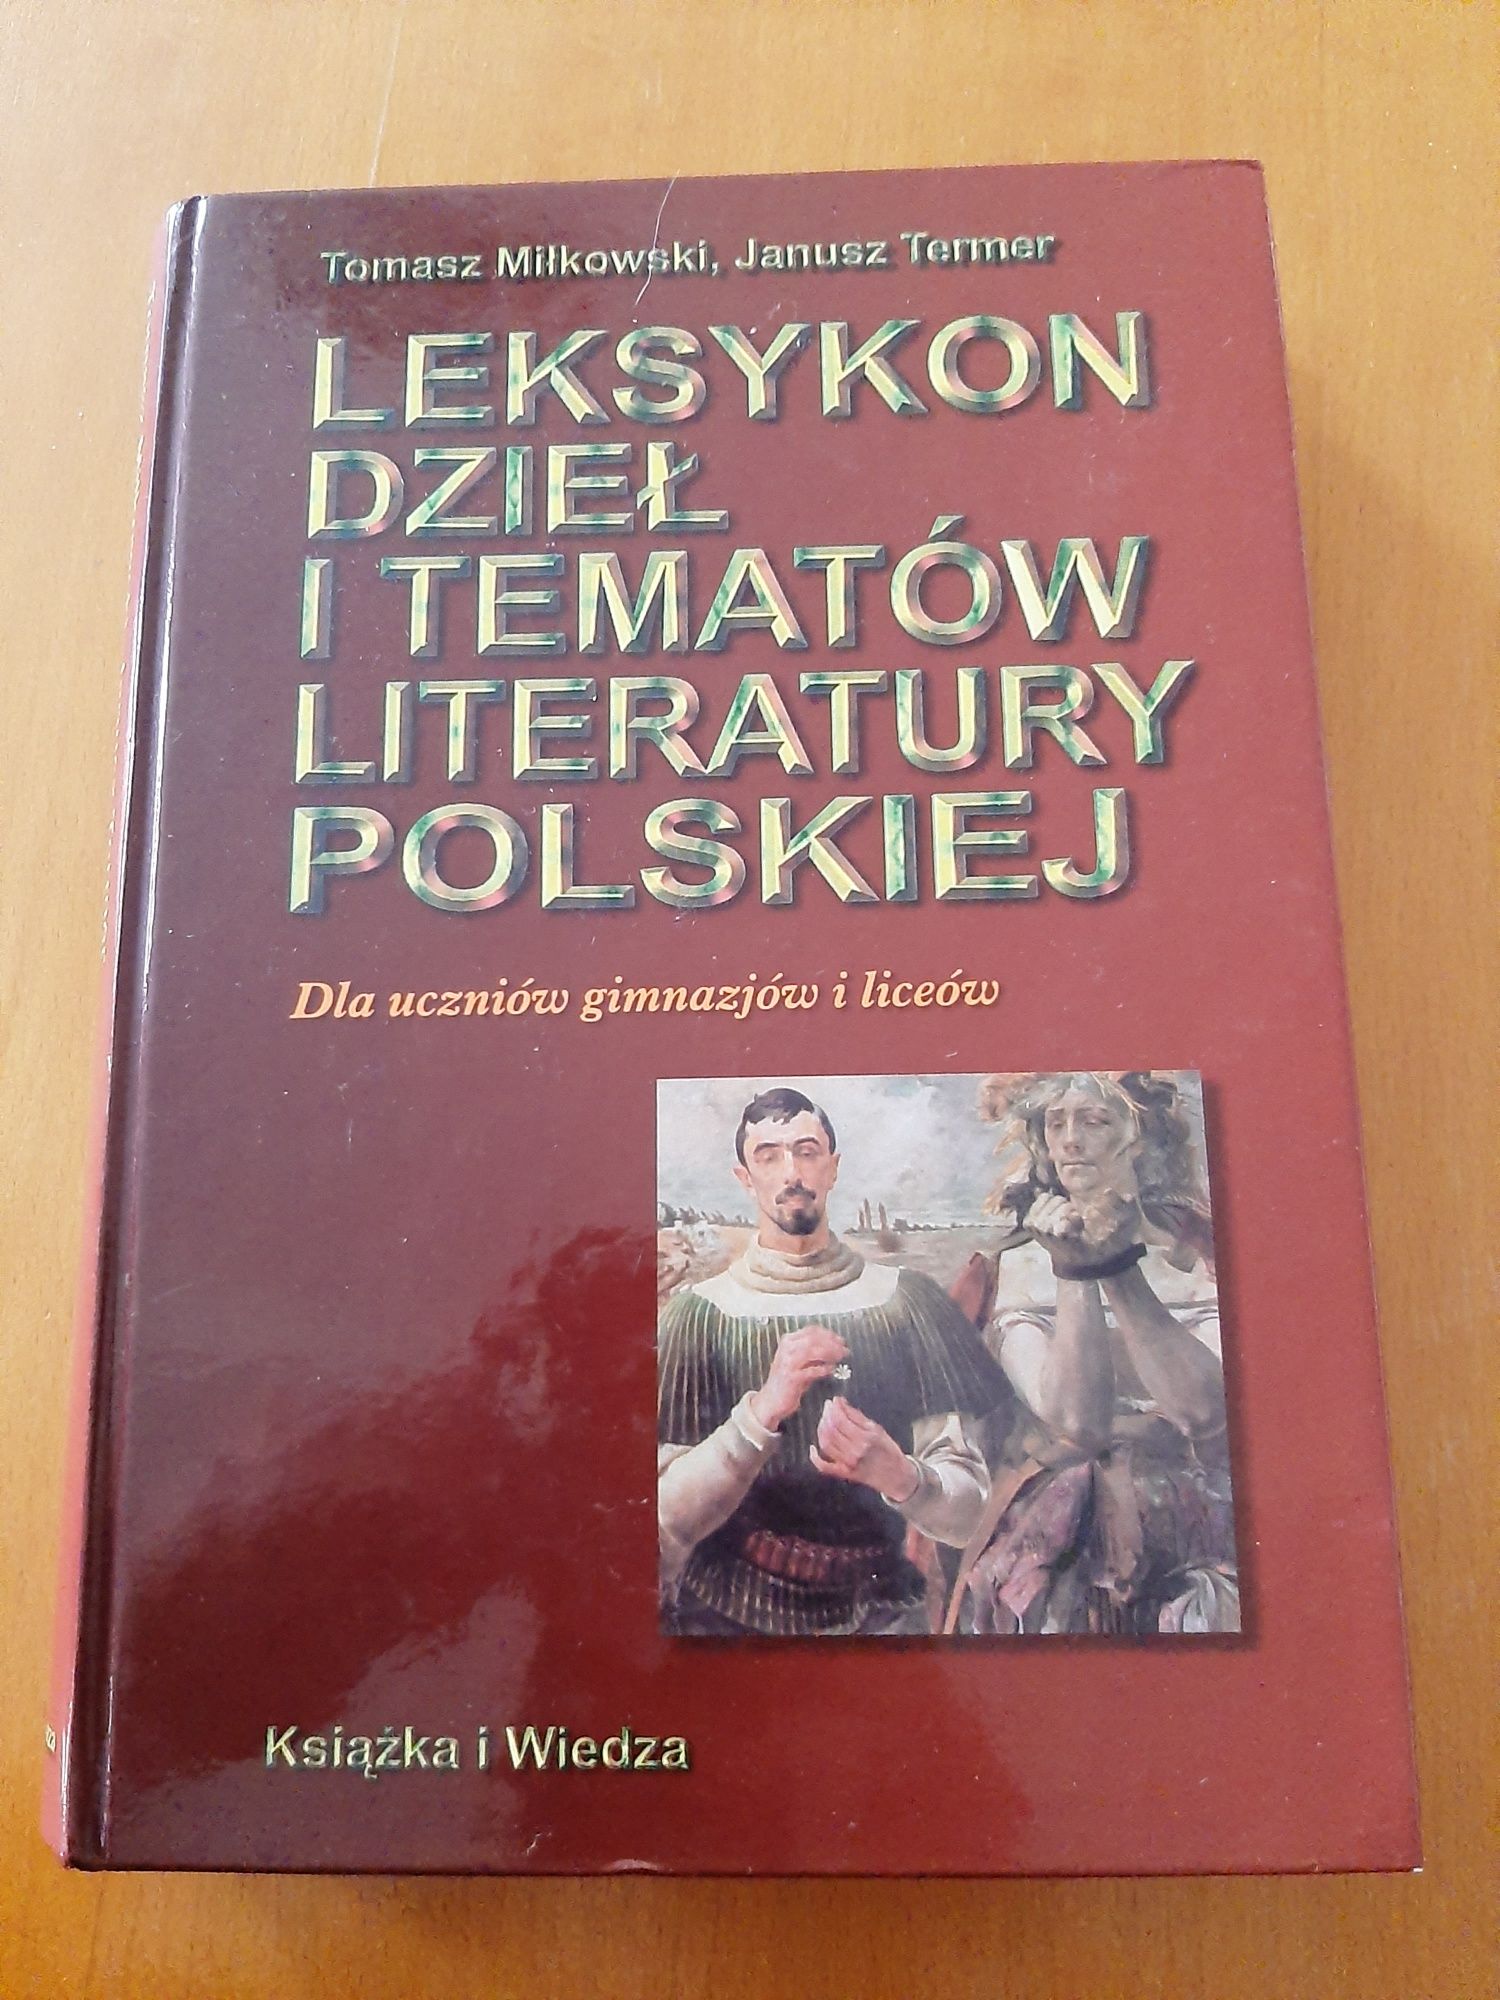 Książka "Leksykon dzieł i tematów literatury polskiej"